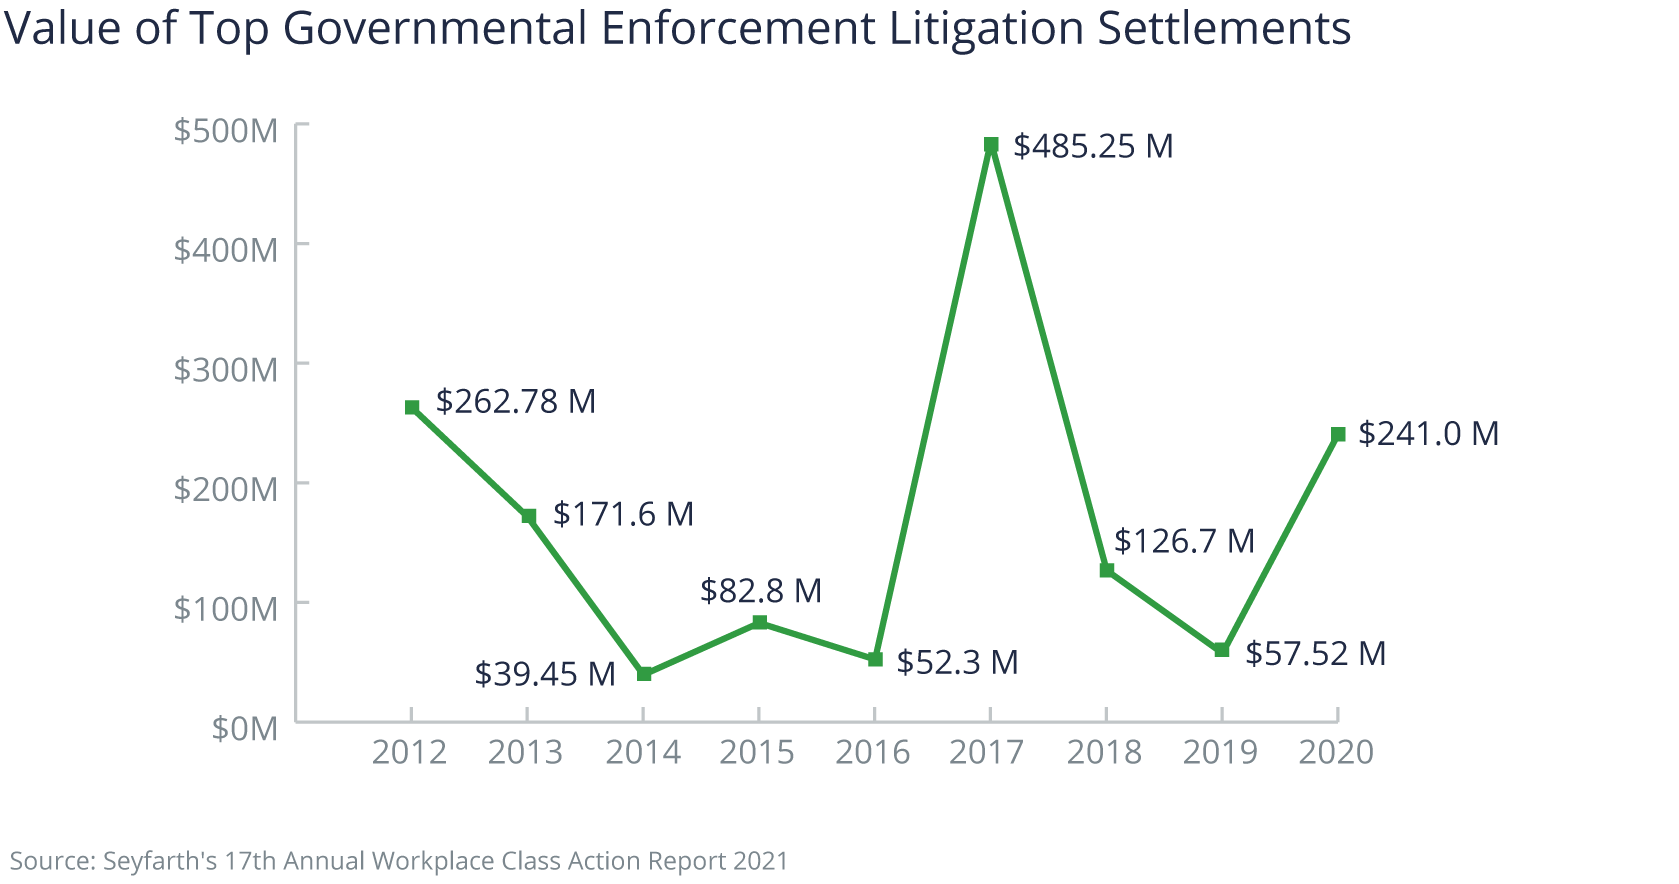 Top Governmental Enforcement Litigation Settlements